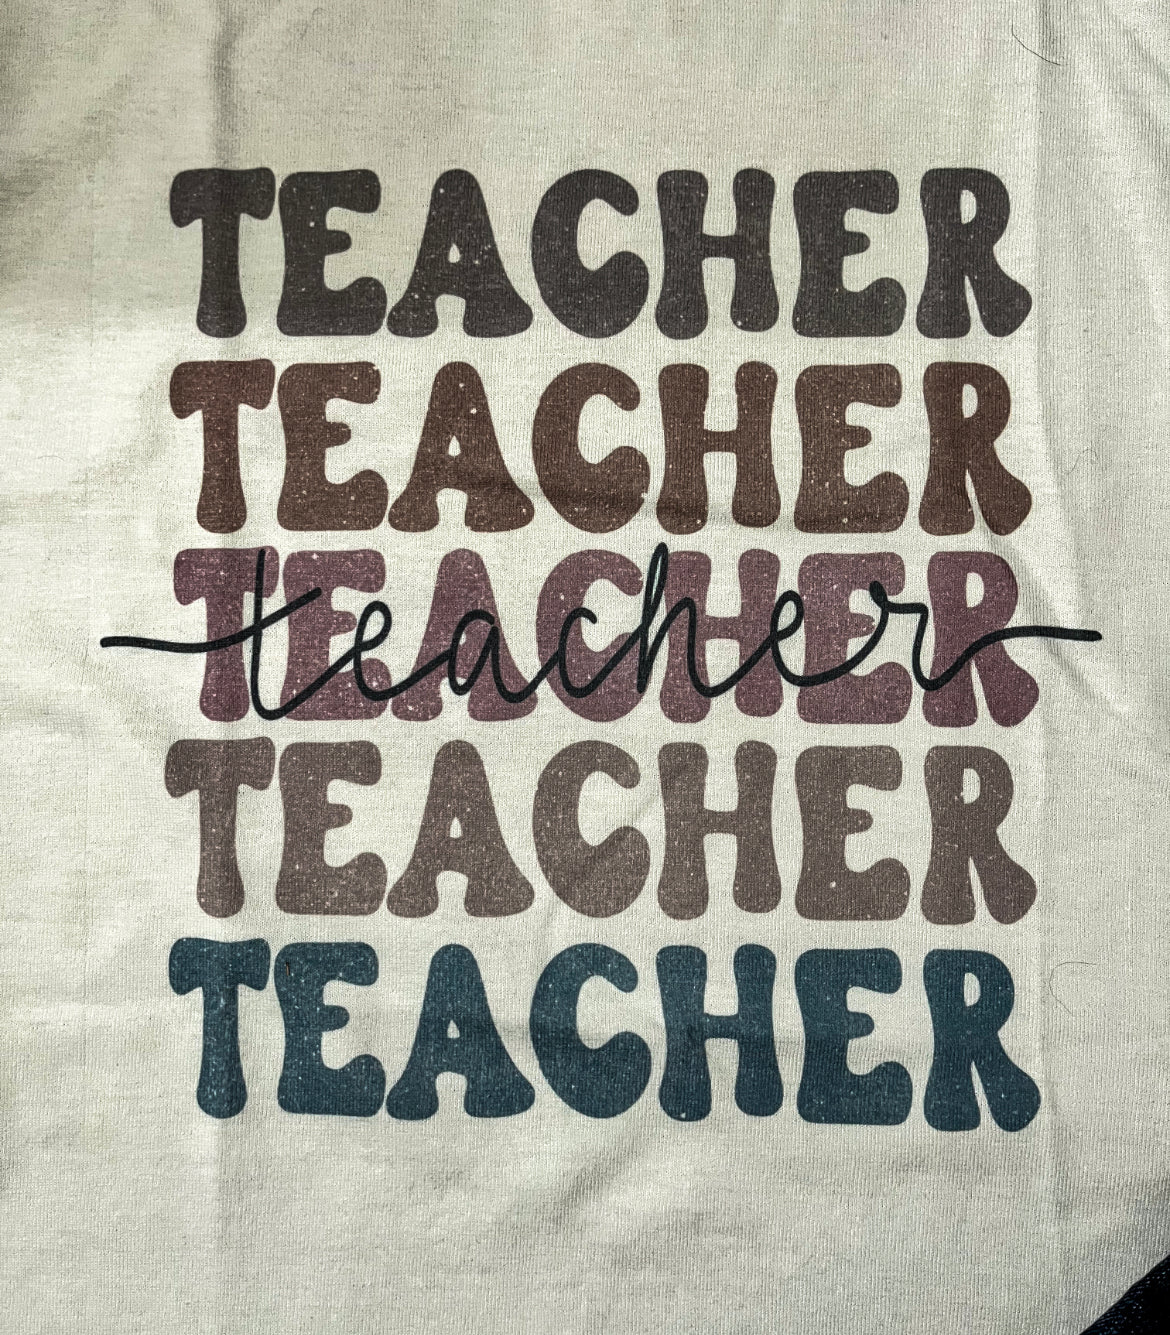 Teacher Tee